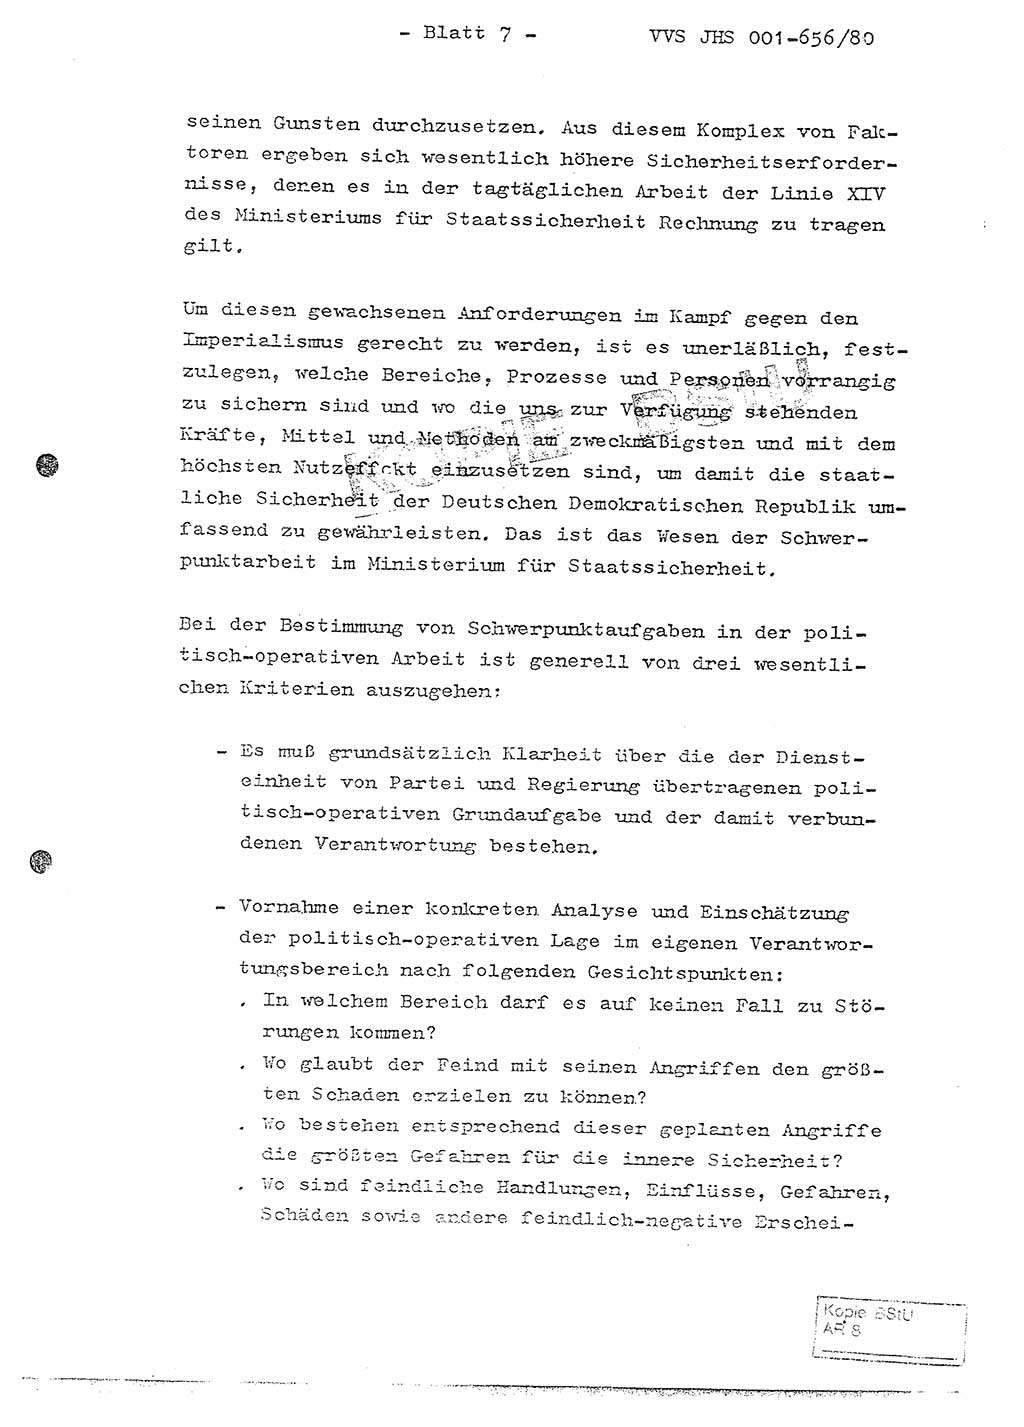 Fachschulabschlußarbeit Unterleutnant Christian Kätzel (Abt. ⅩⅣ), Ministerium für Staatssicherheit (MfS) [Deutsche Demokratische Republik (DDR)], Juristische Hochschule (JHS), Vertrauliche Verschlußsache (VVS) 001-656/80, Potsdam 1980, Blatt 7 (FS-Abschl.-Arb. MfS DDR JHS VVS 001-656/80 1980, Bl. 7)